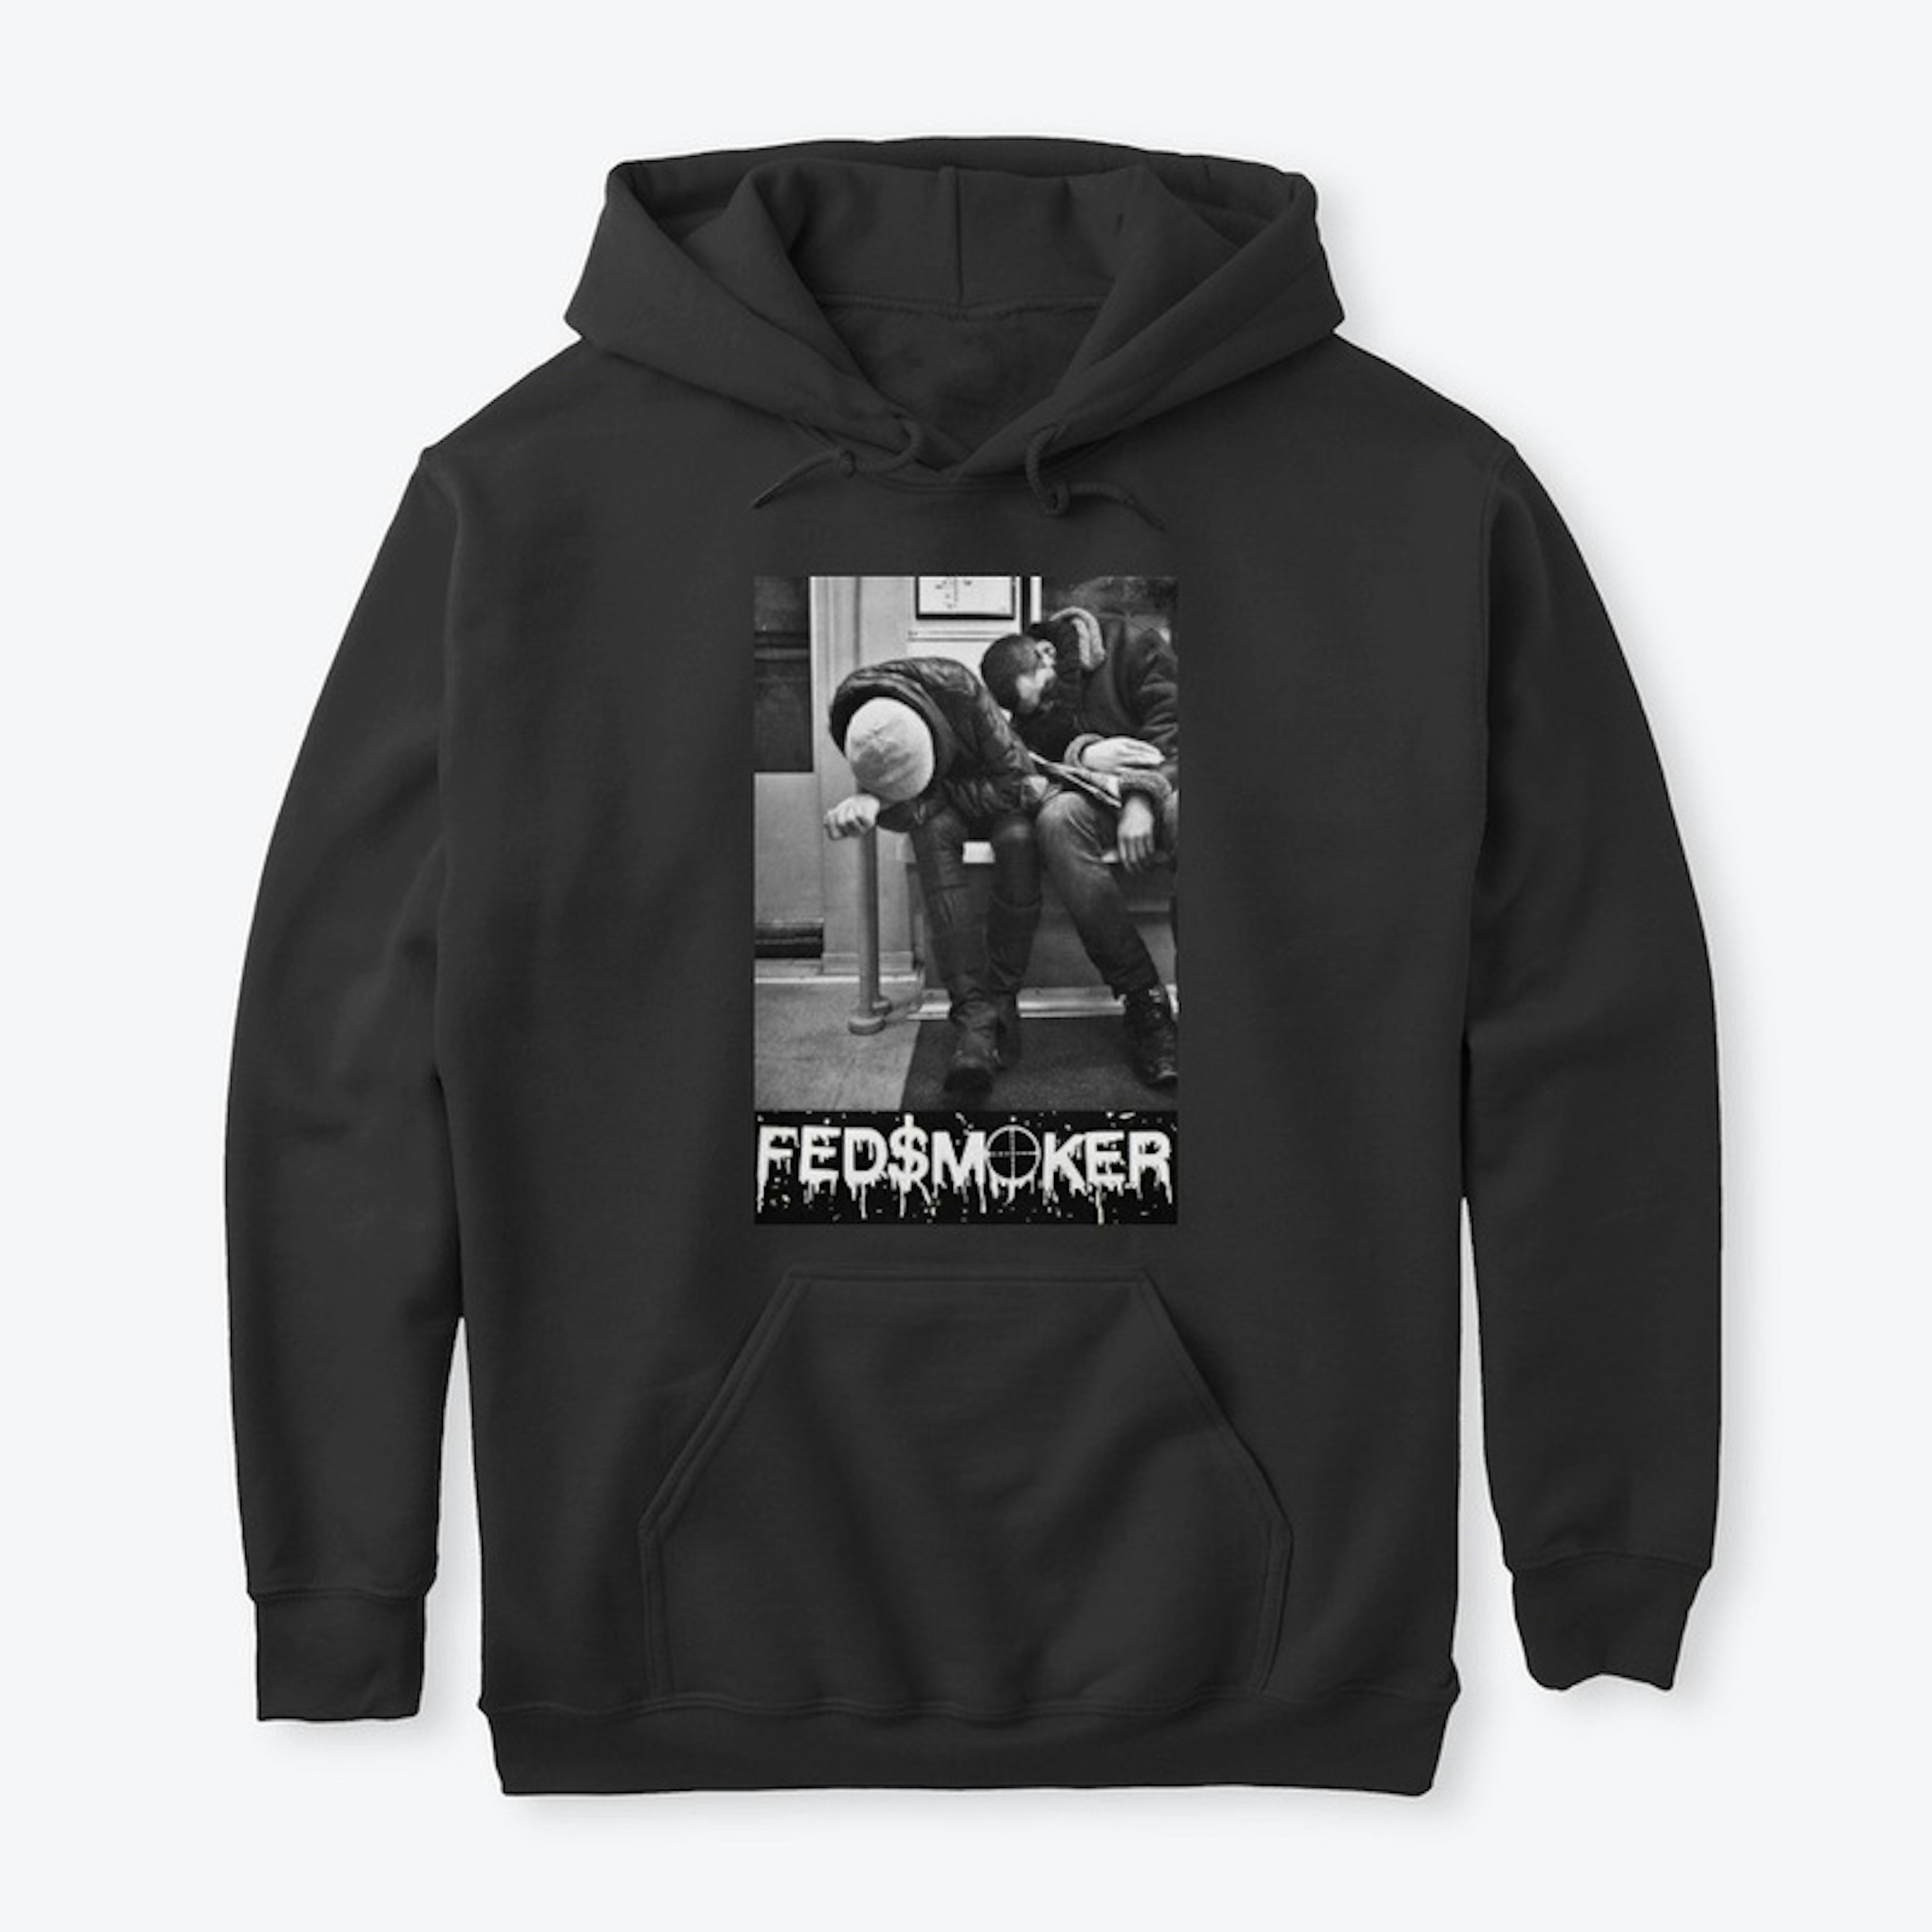 FEDSMOKER "Nap" Hooded Sweatshirt